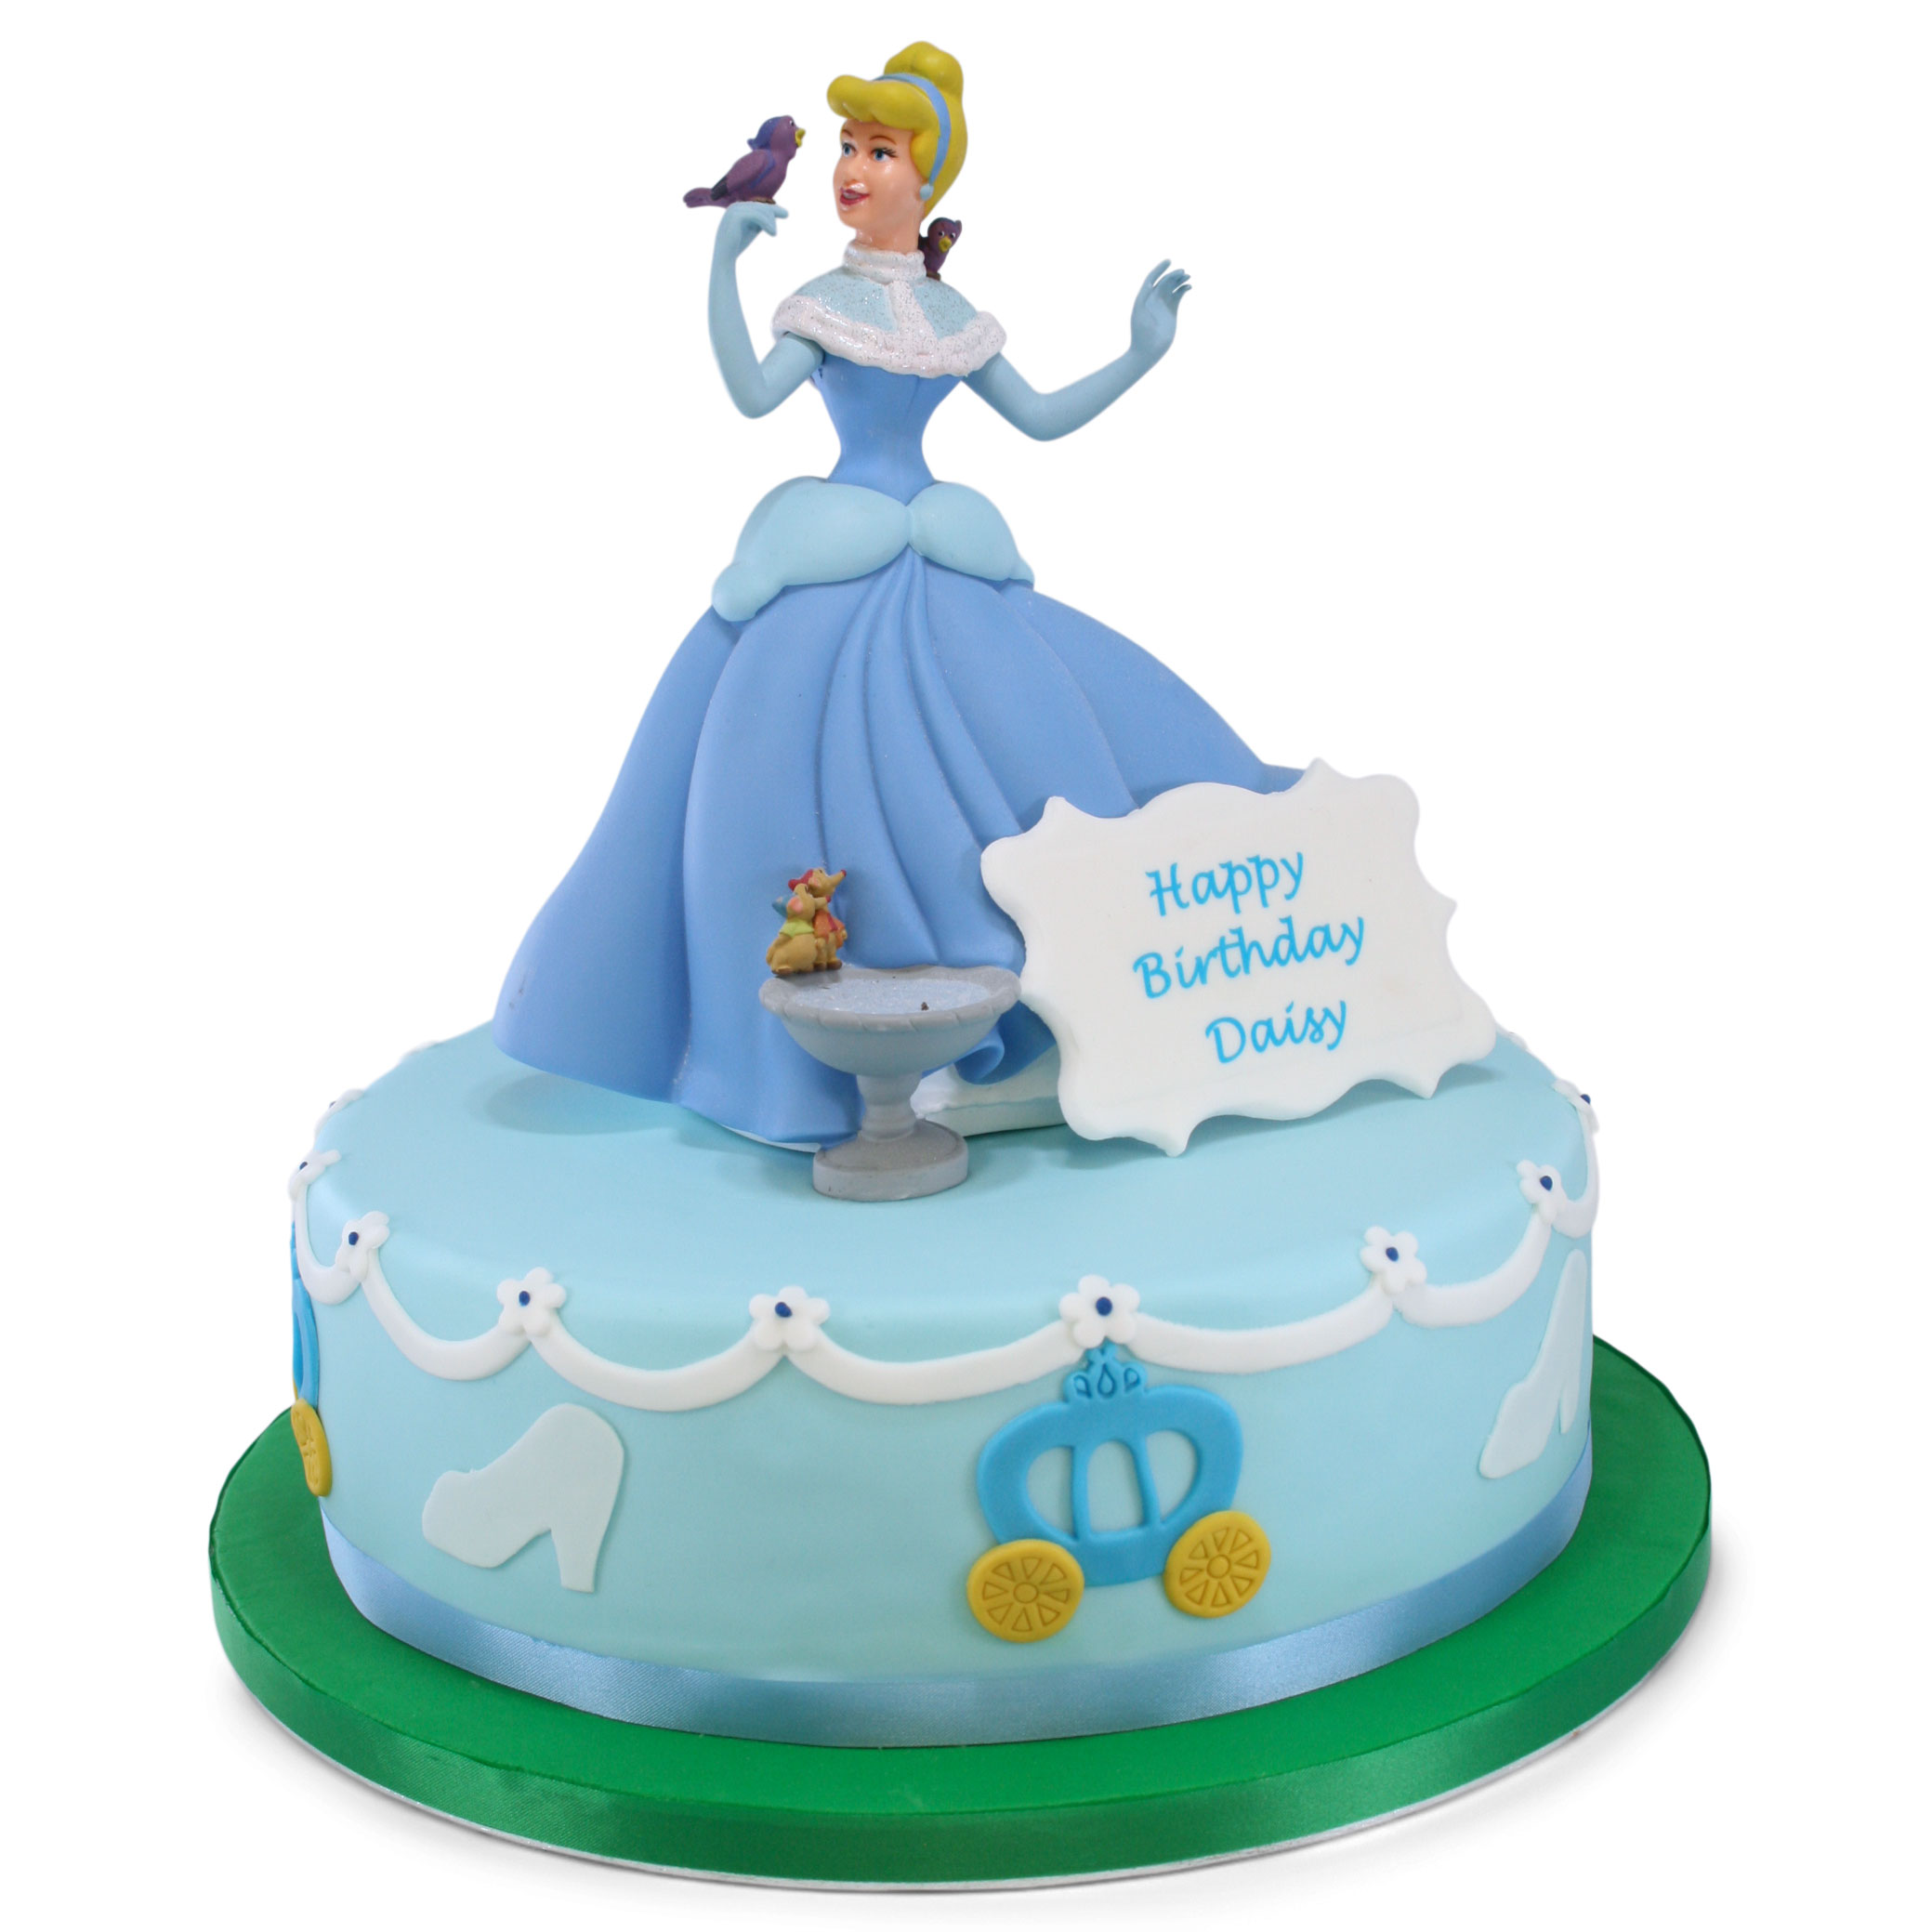 Disney Princess Birthday Cake - Flecks Cakes